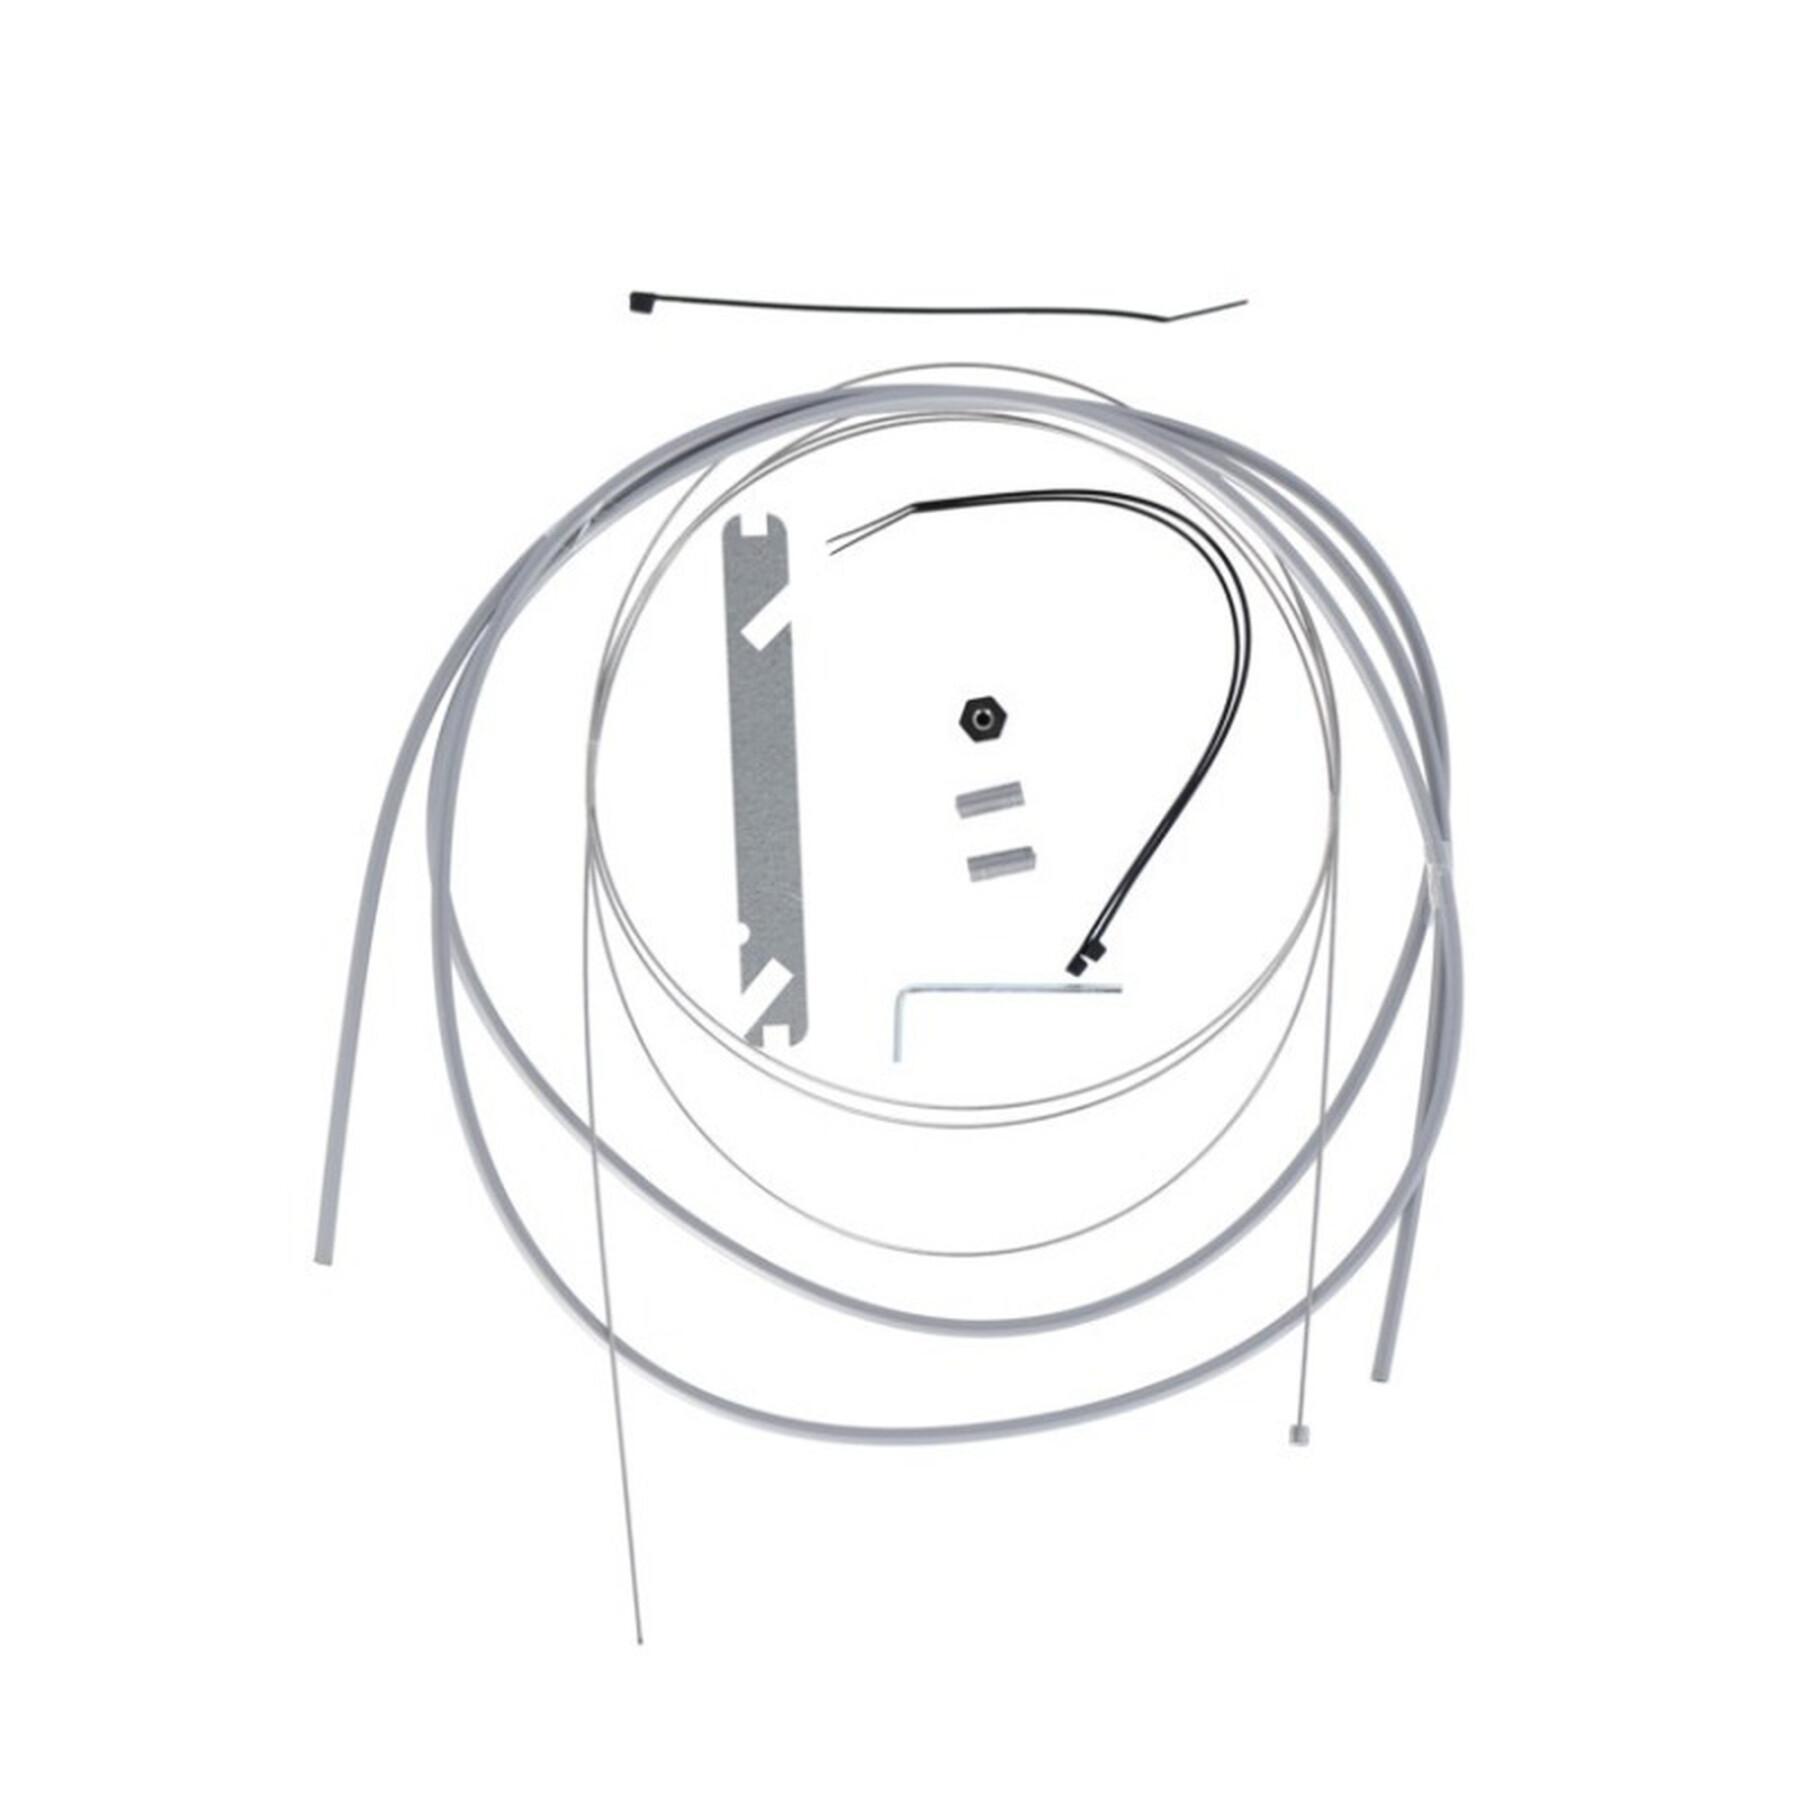 Kabelkit för bakväxel ingår som tillbehör XLC SH-X21 Nexus 4/7/8